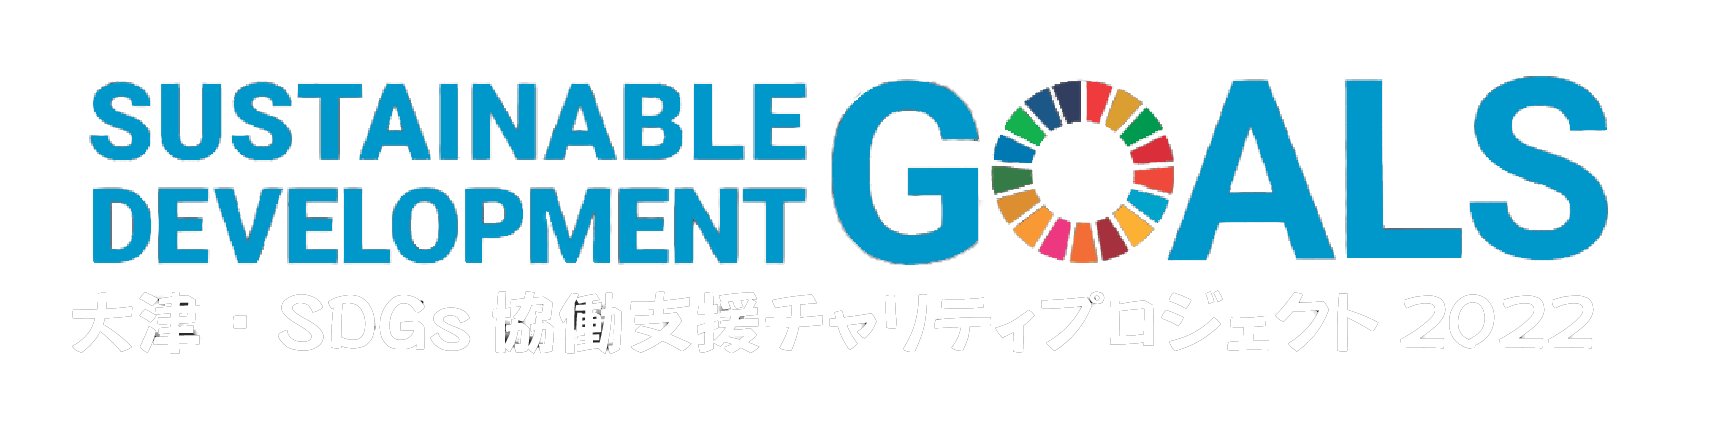 SDGs協働支援チャリティプロジェクト2022